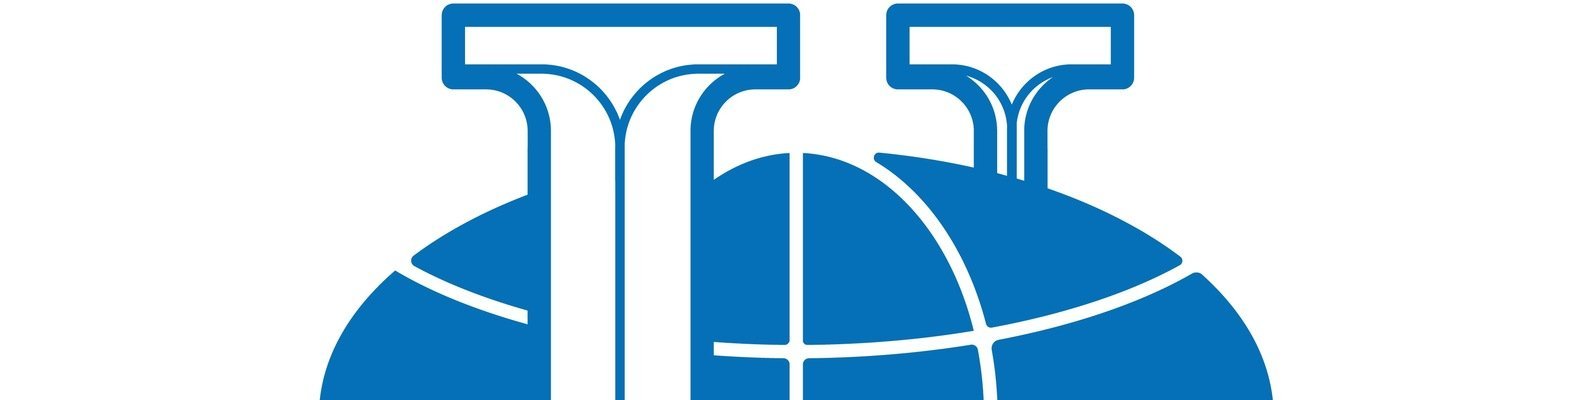 Российский университет дружбы народов логотип на прозрачном фоне фото